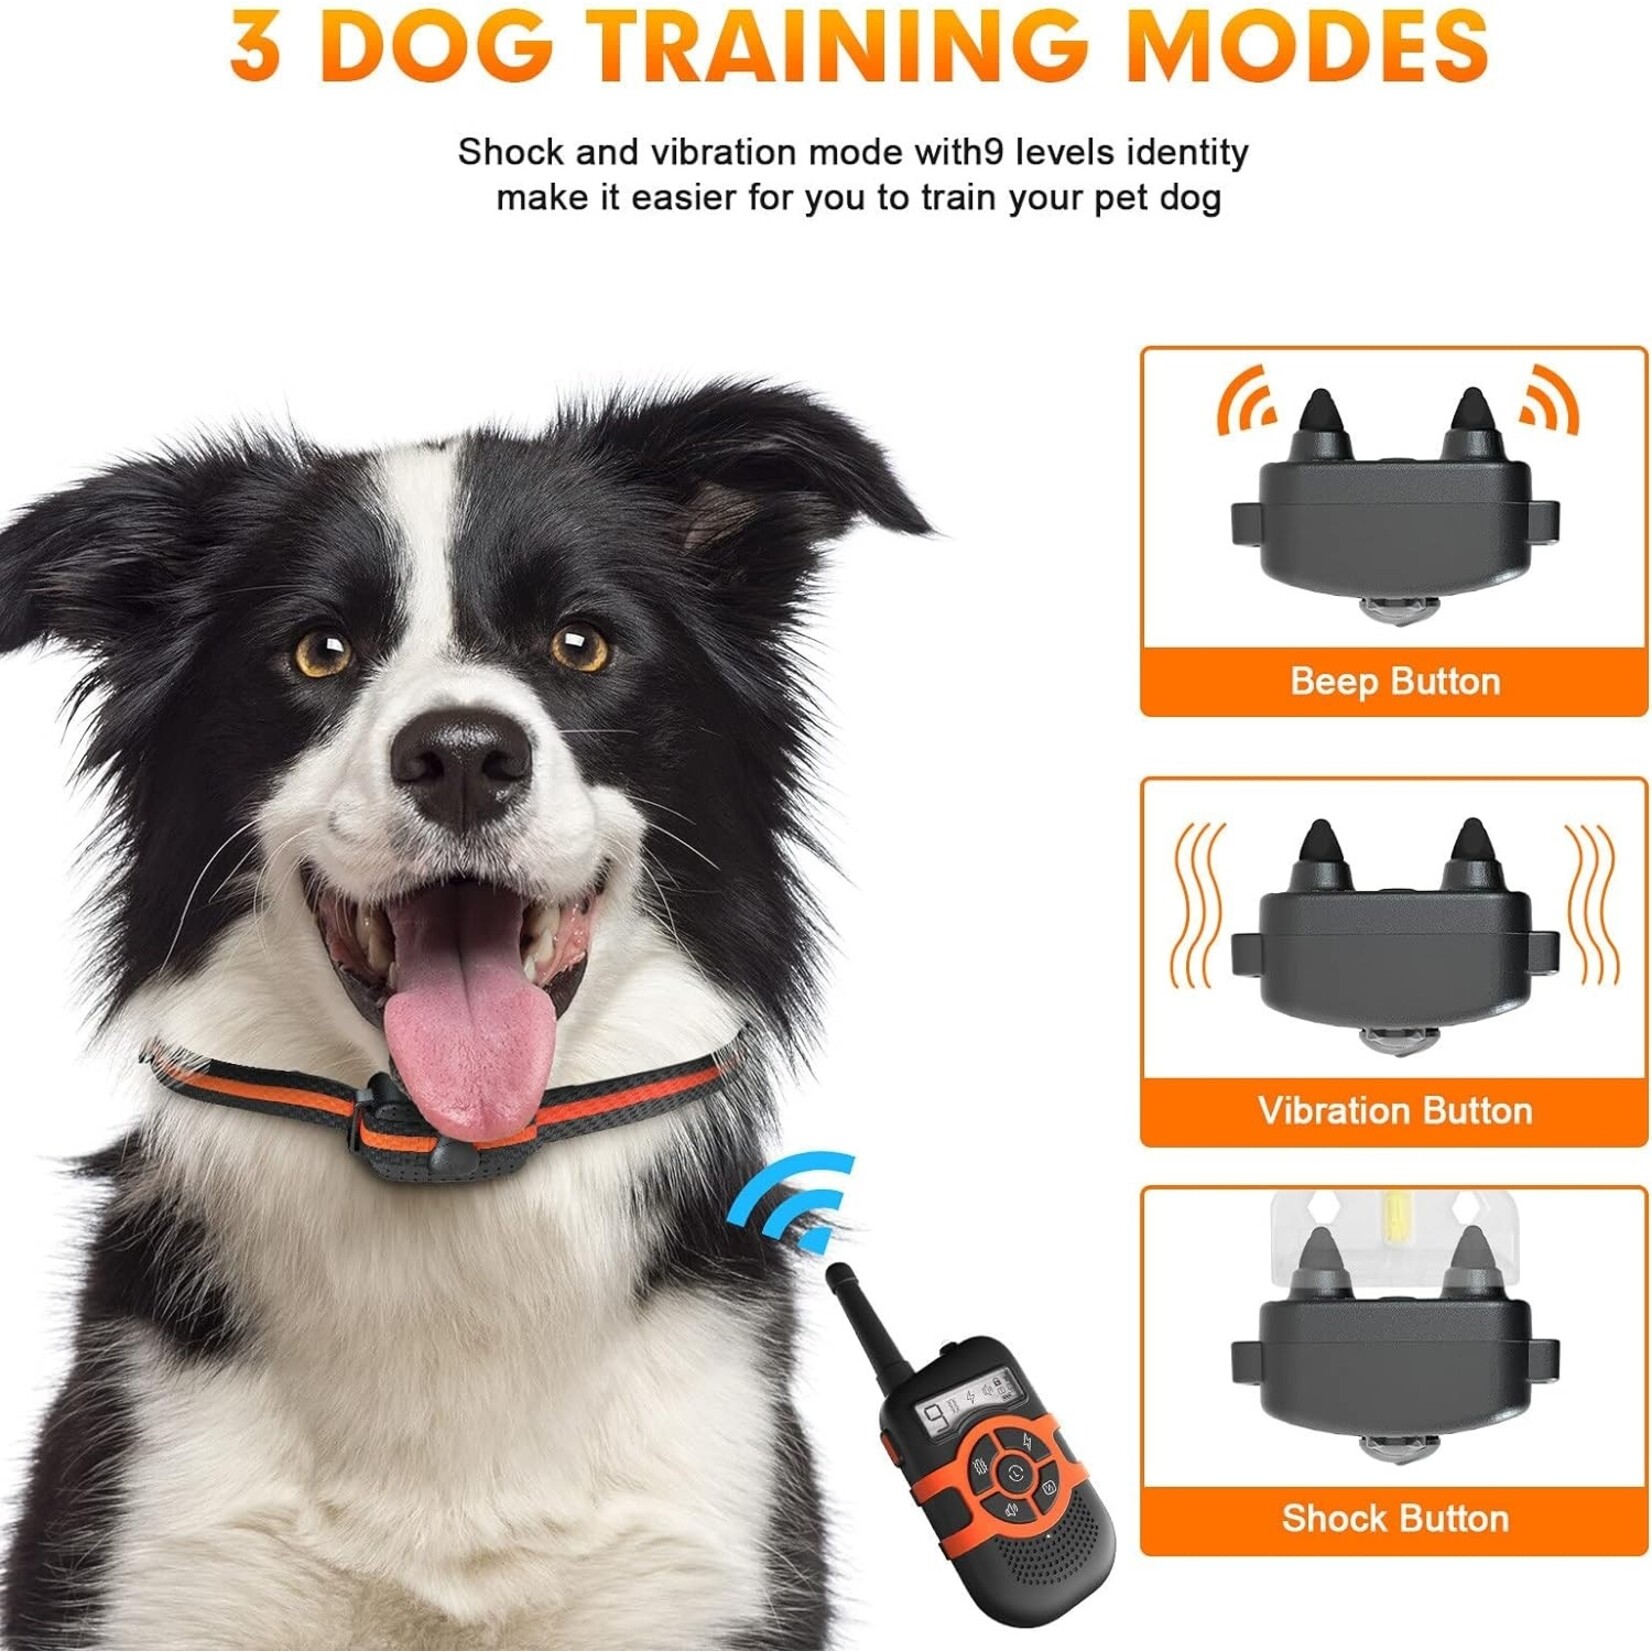 Honden Trainingshalsbanden met vergrendelknop om onbedoelde bediening te voorkomen. Elektronische schokhalsband Waterdichte oplaadbare batterij tot 300 meter afstandsbedieningsbereik